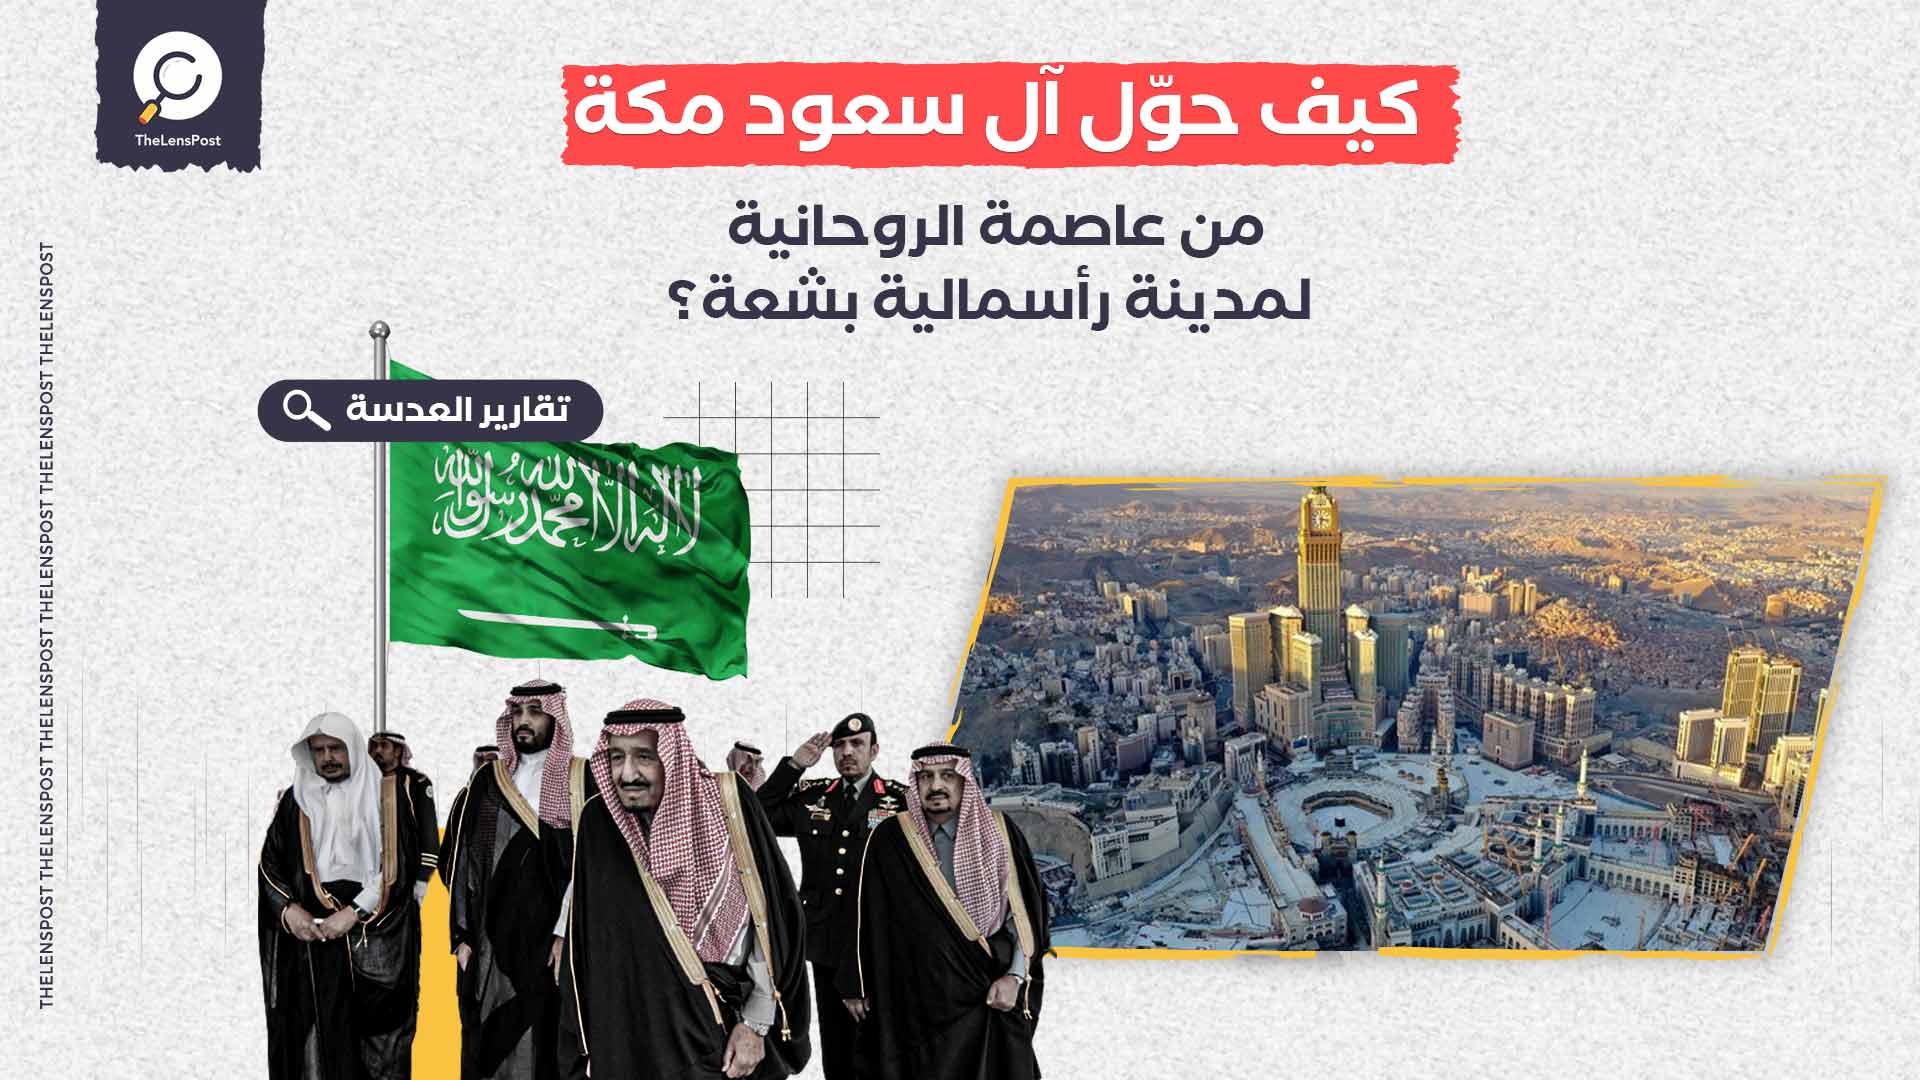 عشرية سوداء من "الإفساد المُمنهج".. كيف حوّل آل سعود مكة من عاصمة الروحانية لمدينة رأسمالية بشعة؟